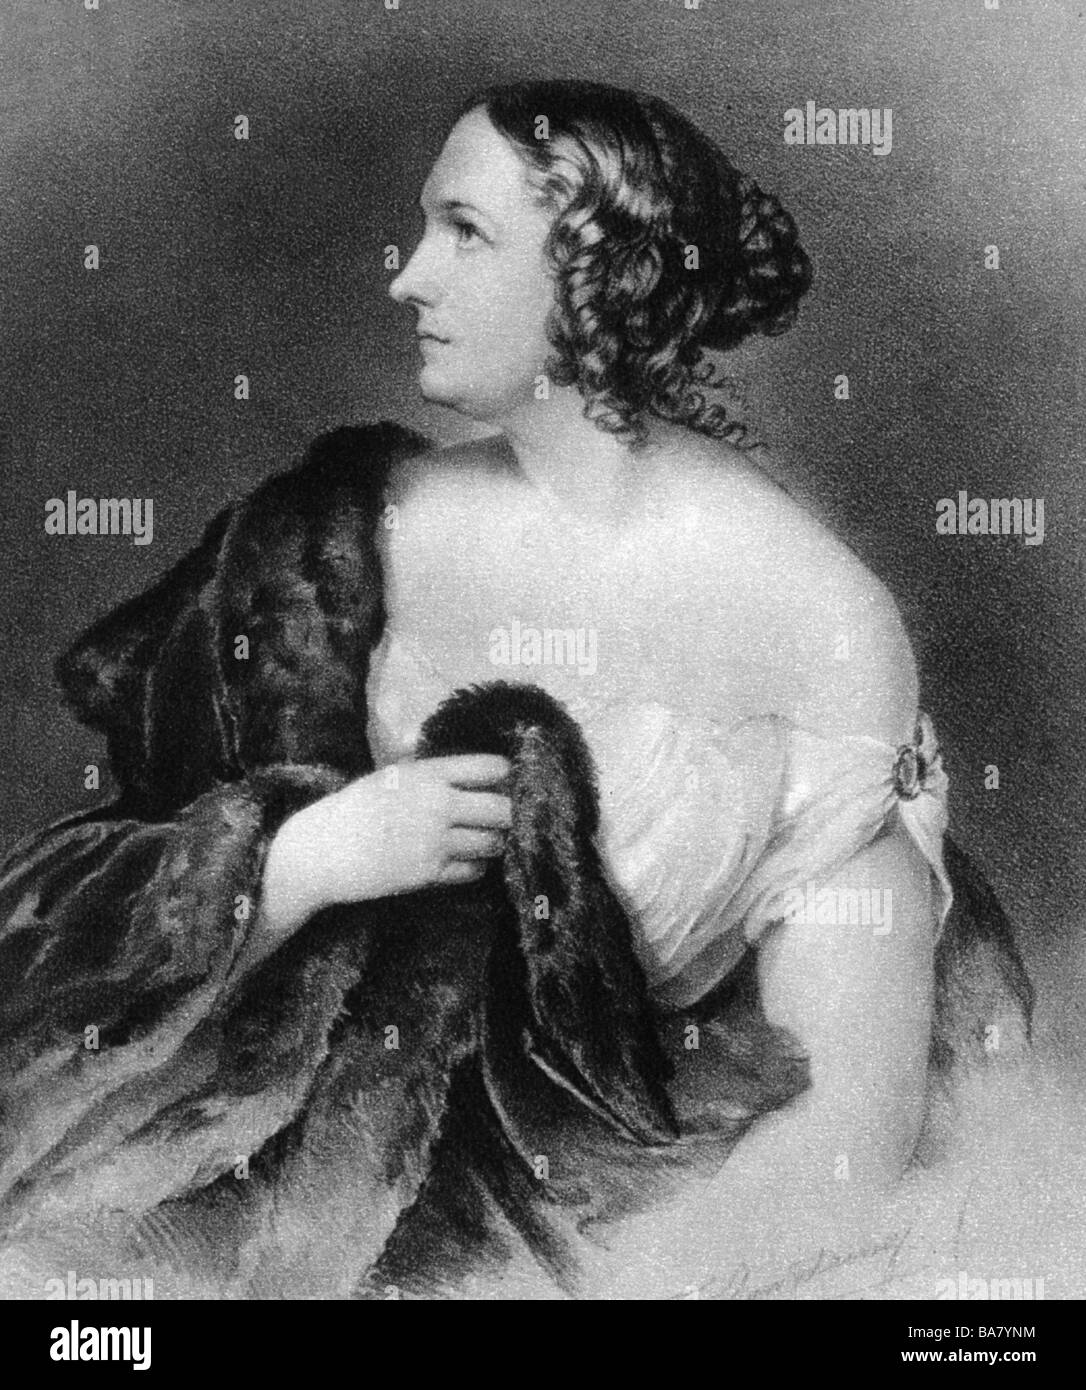 Schroeder-Devrient, Wilhelmine, 6.12.1804 - 26.1.1860, German singer, half length, side face, lithograph by Friedrich Hanfstaengl, Stock Photo